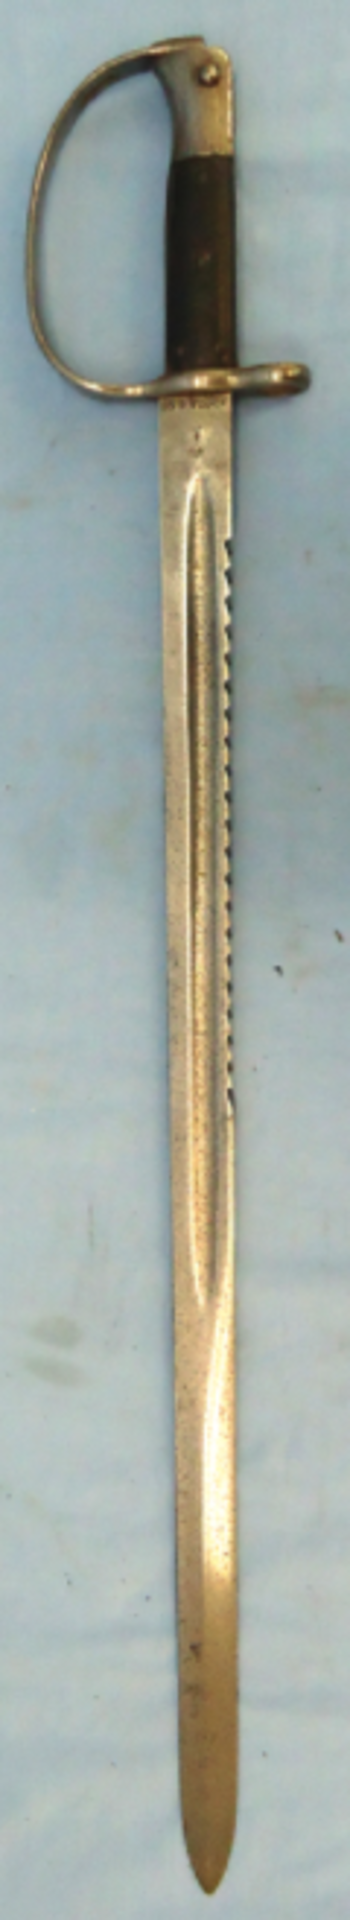 British Martini Henry Pattern 1879 Artillery Sawback Bayonet. - Image 3 of 3